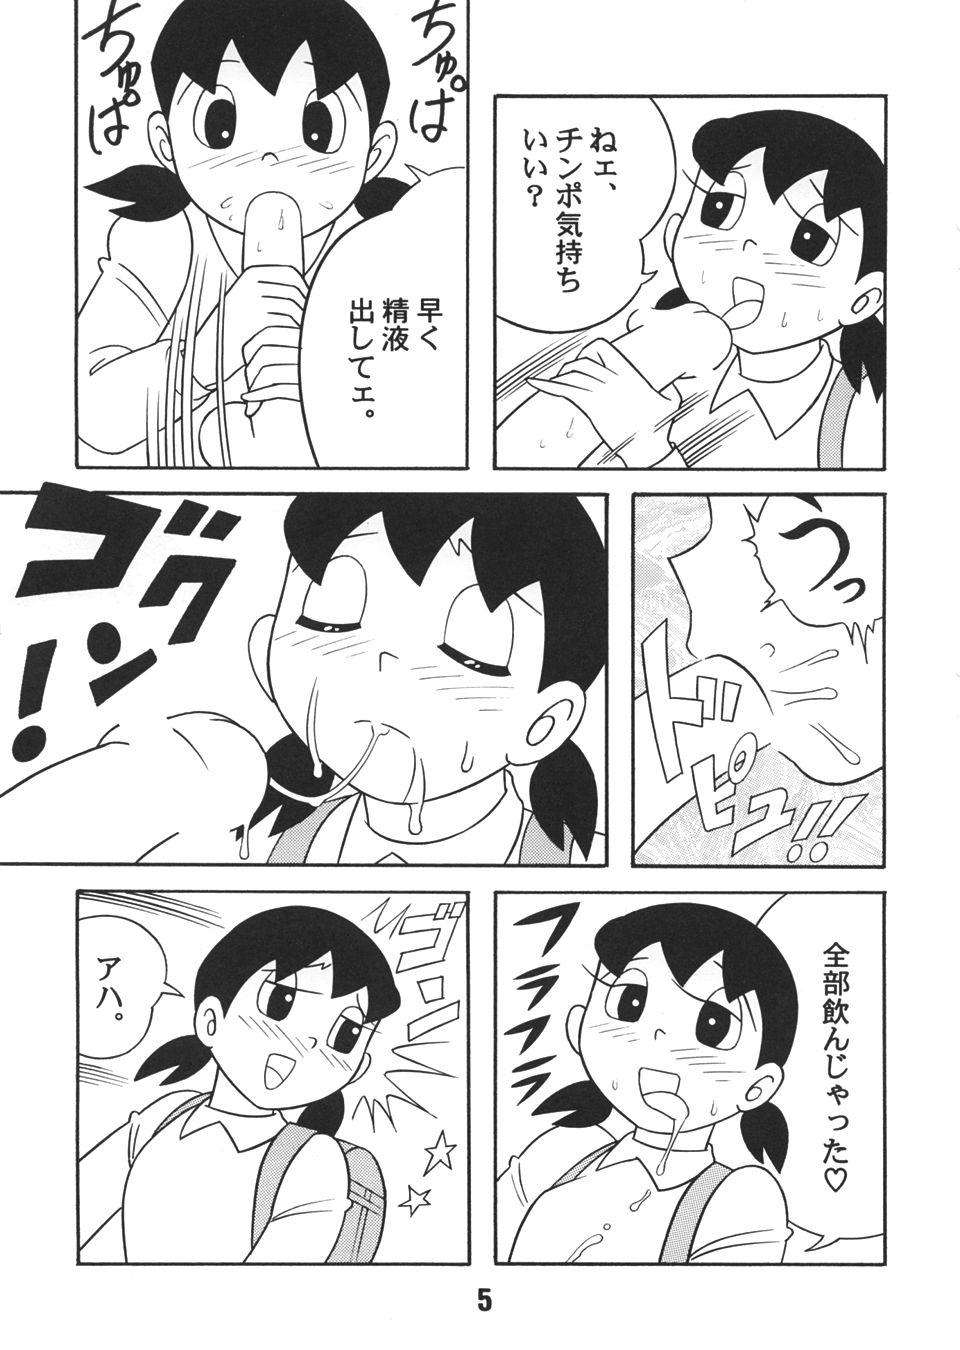 Sloppy Blow Job Gen - Doraemon Women Sucking - Page 4